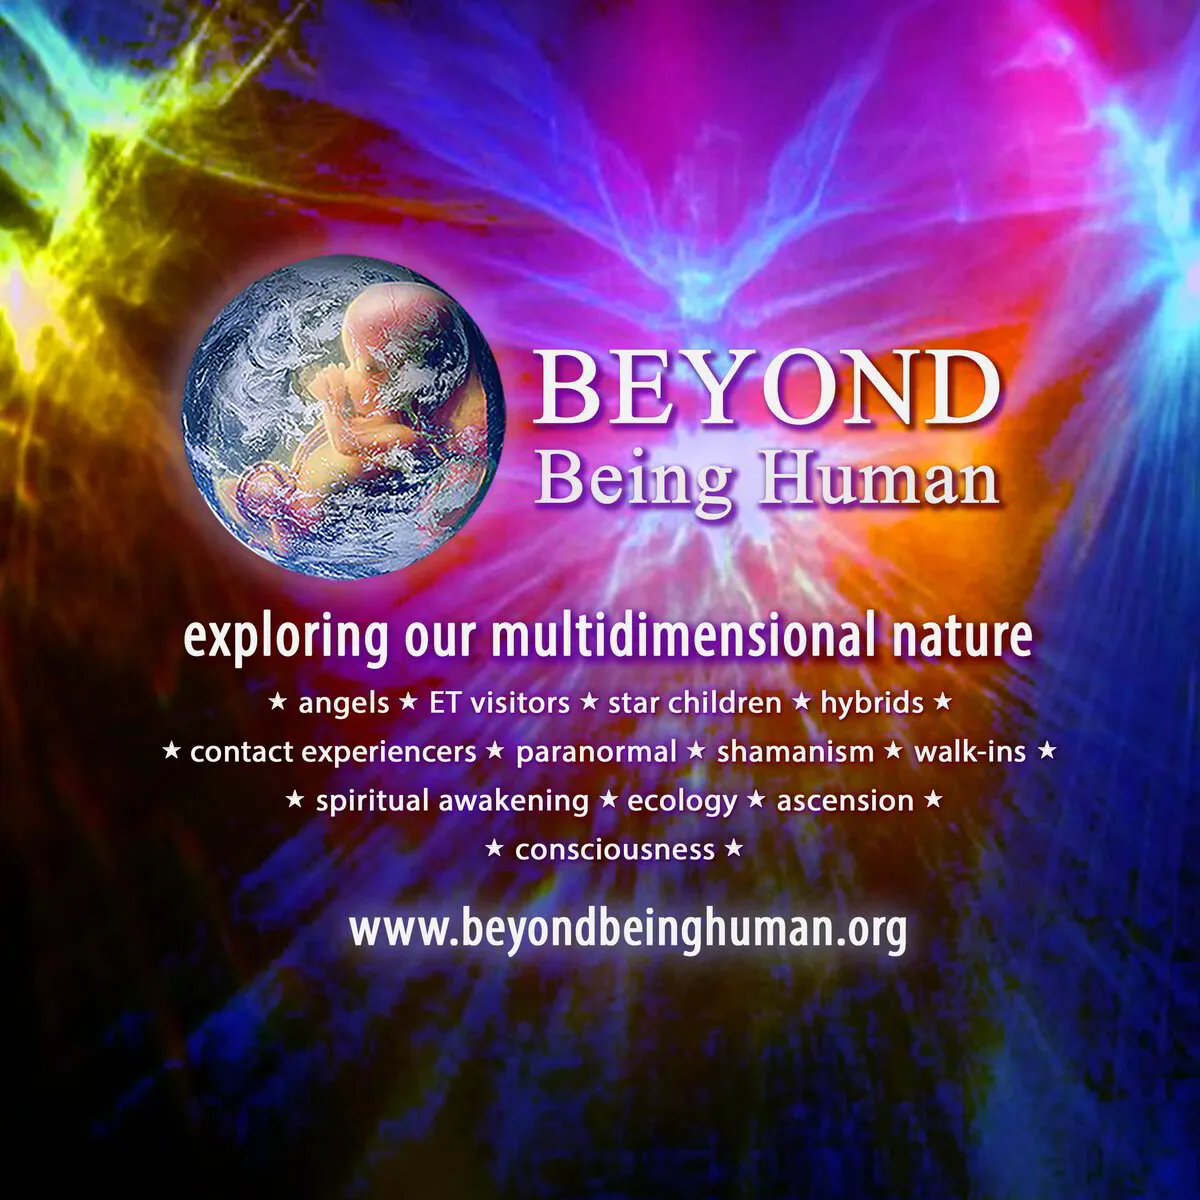 Beyond Being Human